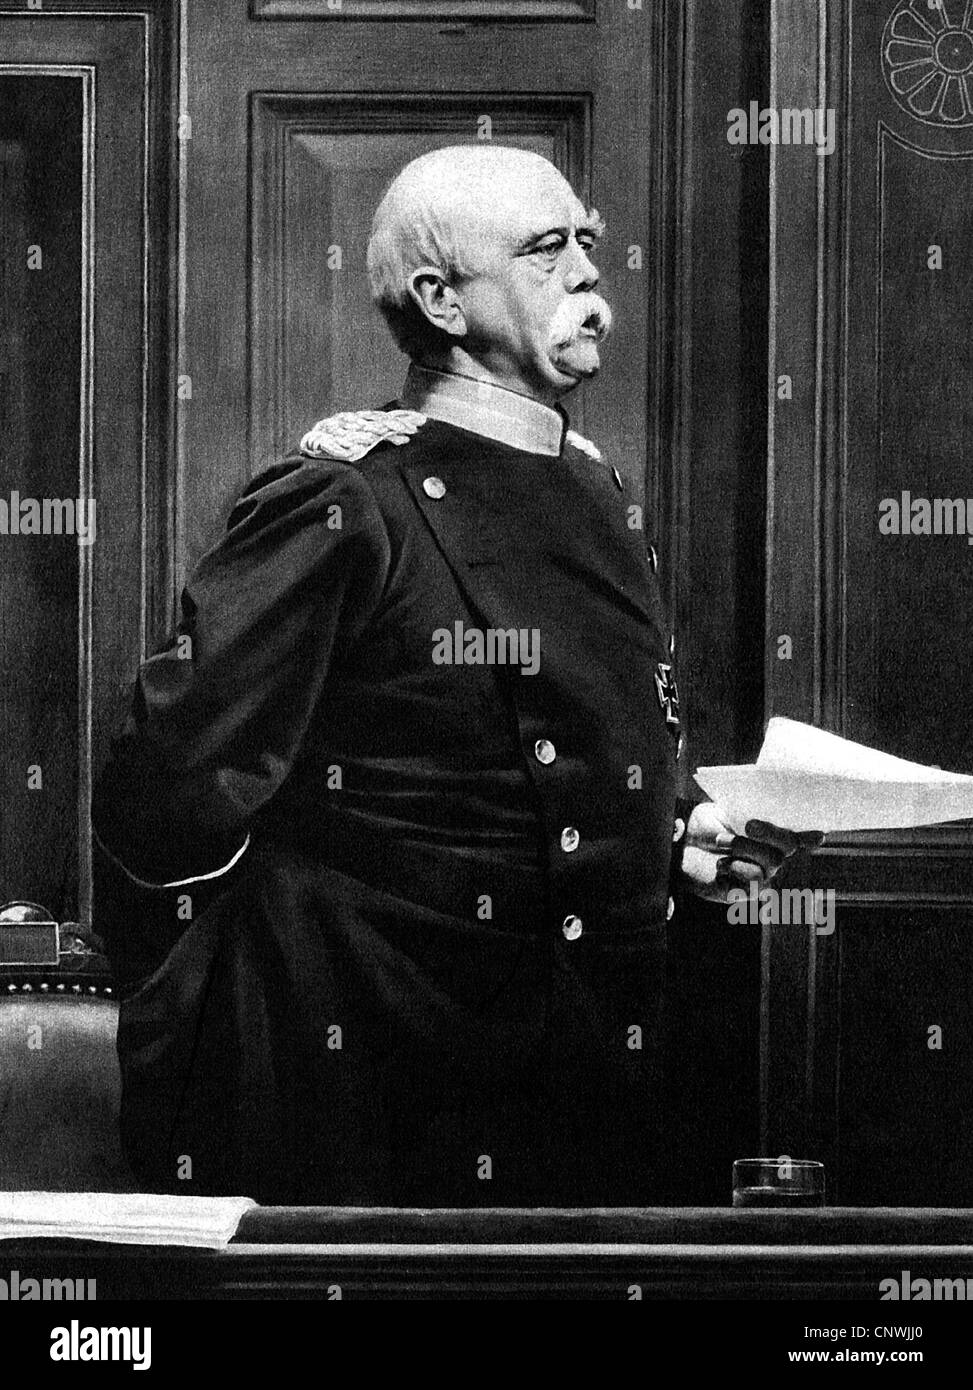 Bismarck, Otto von, 1.4.1815 - 30.7.1898, German politician, Reich Chancellor 1871 - 1890, giving speech, painting by Anton von Werner, Stock Photo